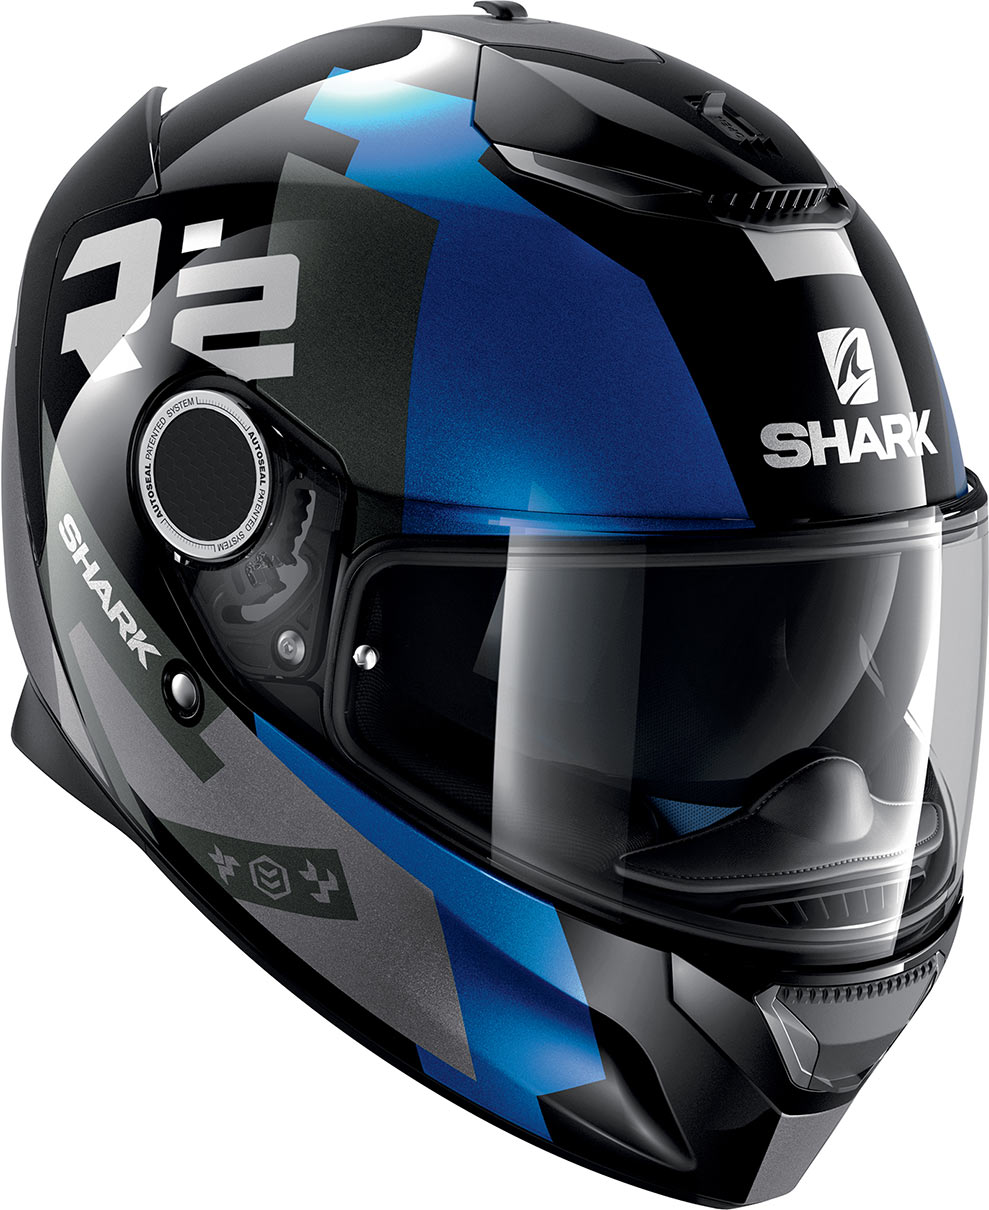 Le Shark Spartan est le nouveau casque intégral Touring de la marque française